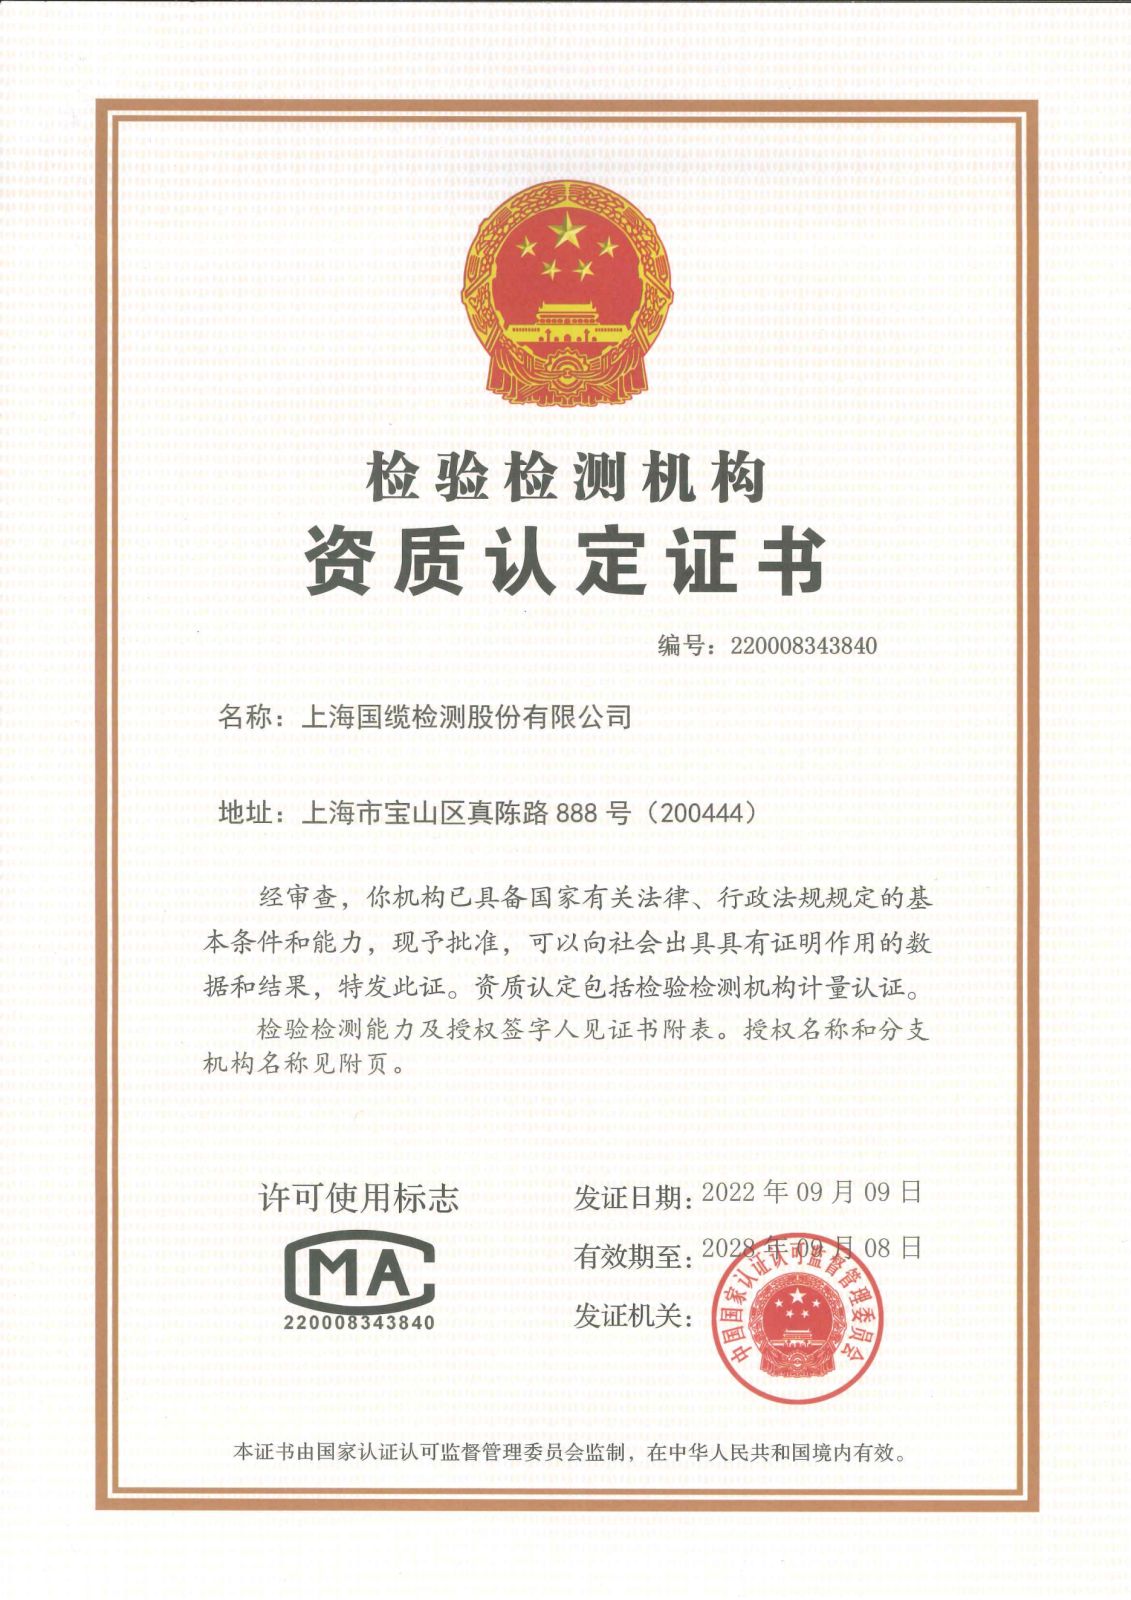 上海國纜檢測股份有限公司資質認定證書